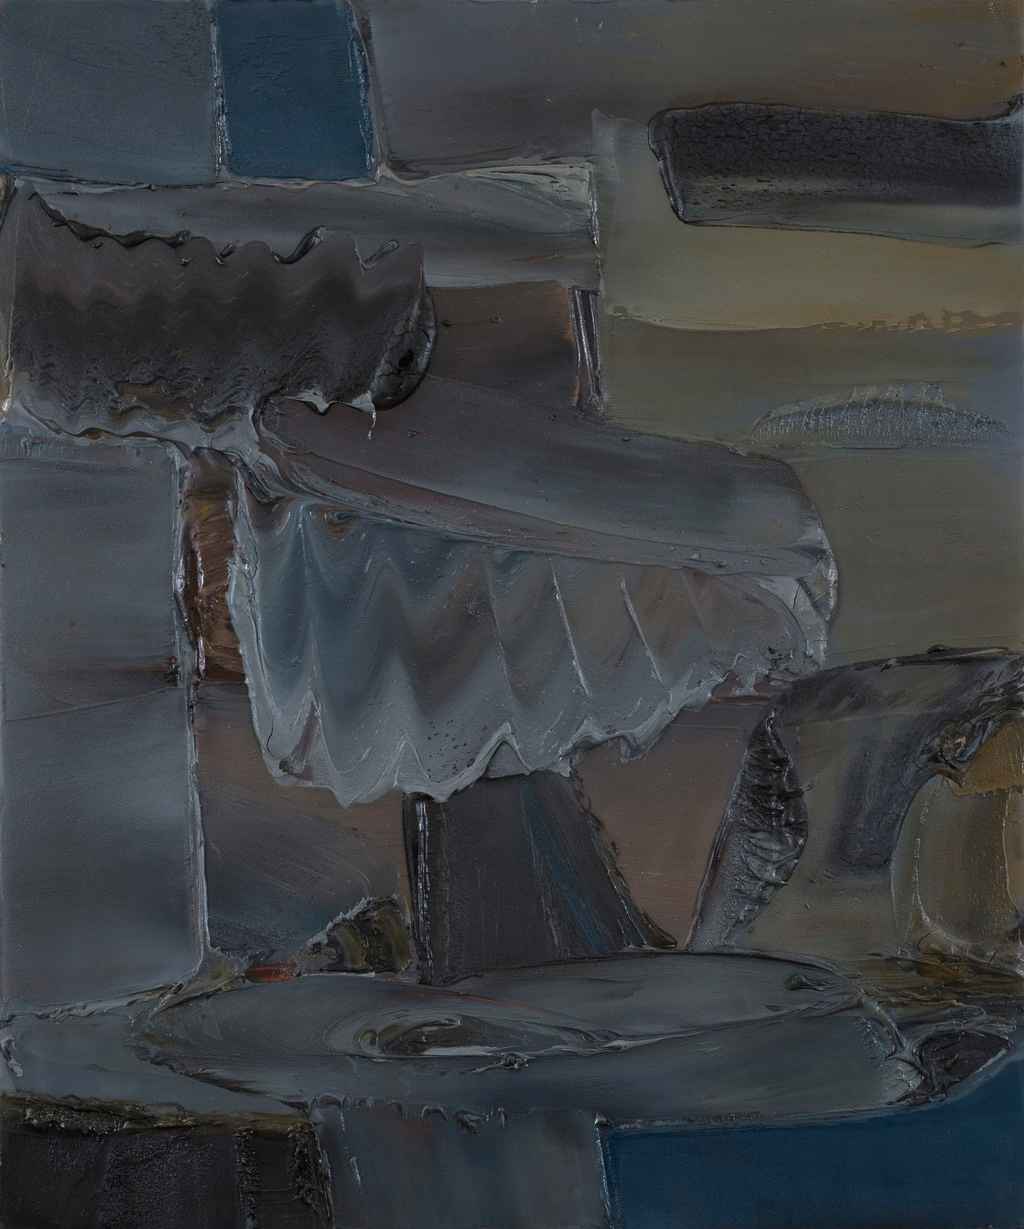 Erminio Tansini, “Senza titolo”, 1996, olio su tavola, 60x50 cm. © Erminio Tansini